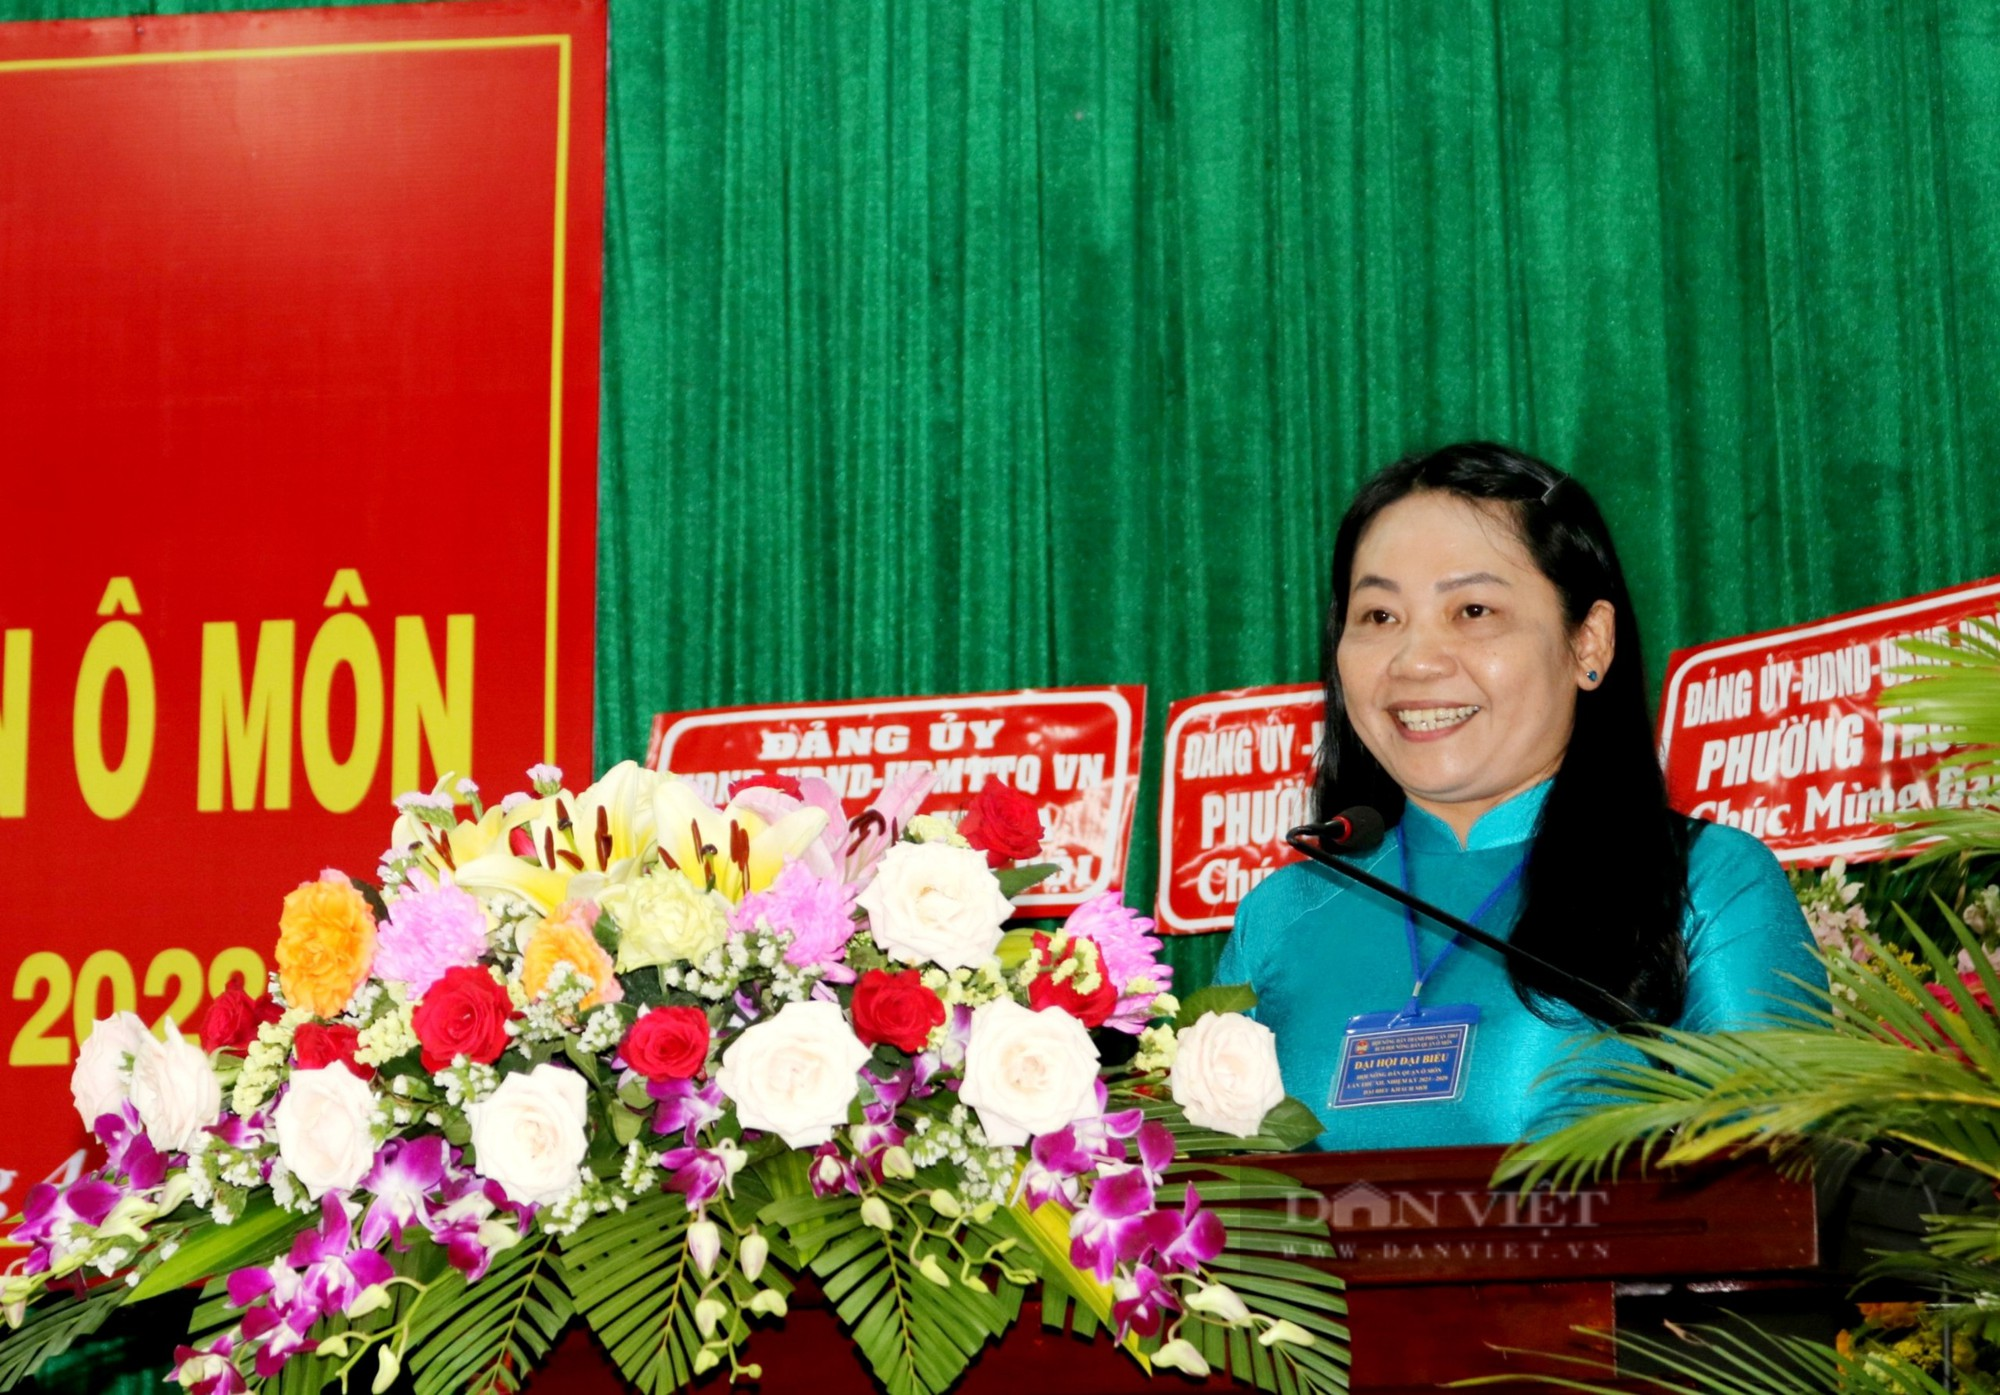 Cần Thơ: Đại hội Hội Nông dân quận Ô Môn, ông Trương Văn Phúc được bầu chức Chủ tịch - Ảnh 3.